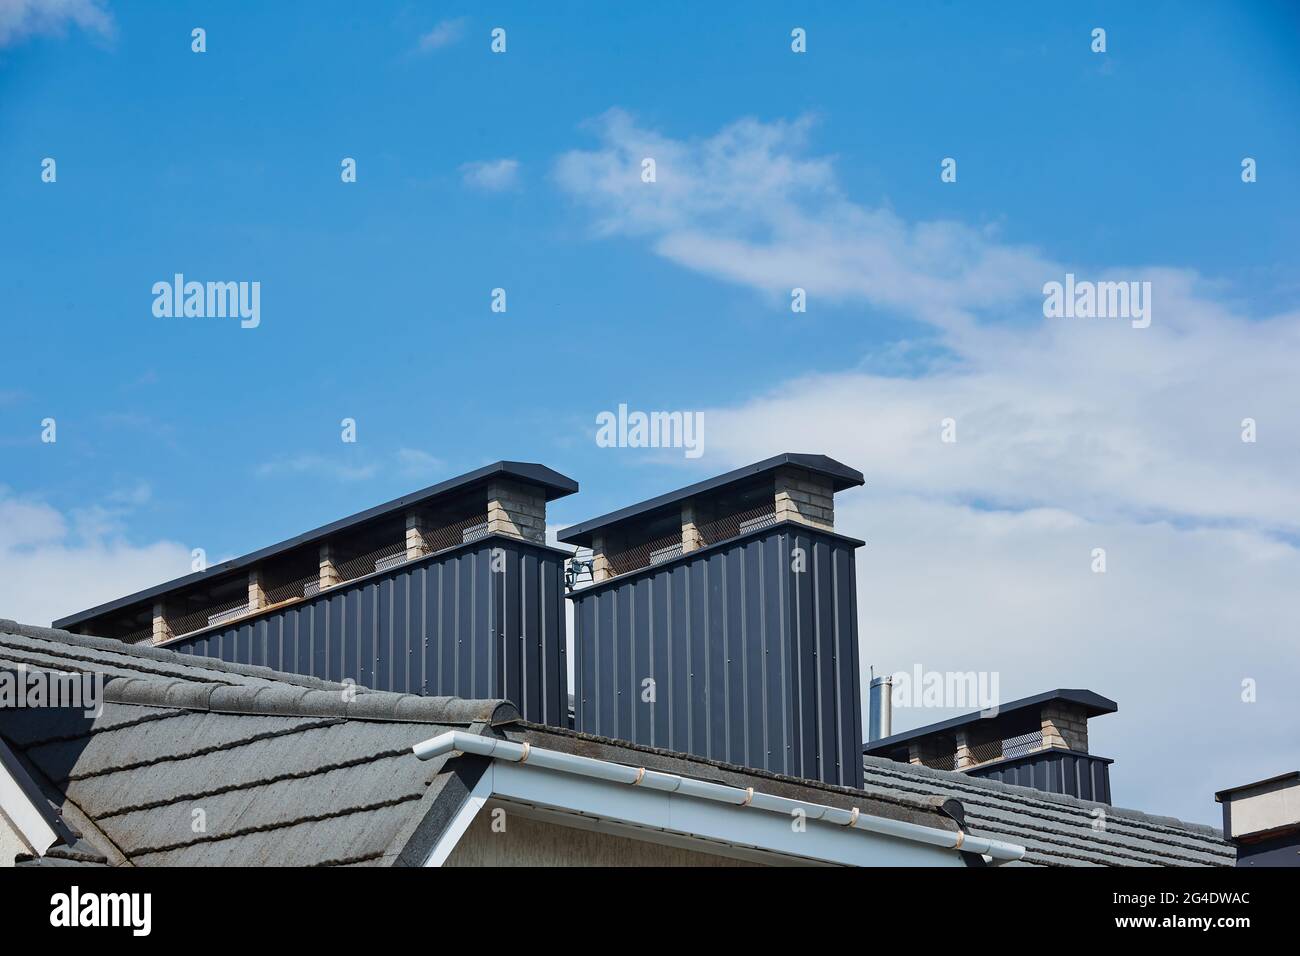 Dach auf Geschuppt Haus Dachentlüftung Stockfotografie - Alamy